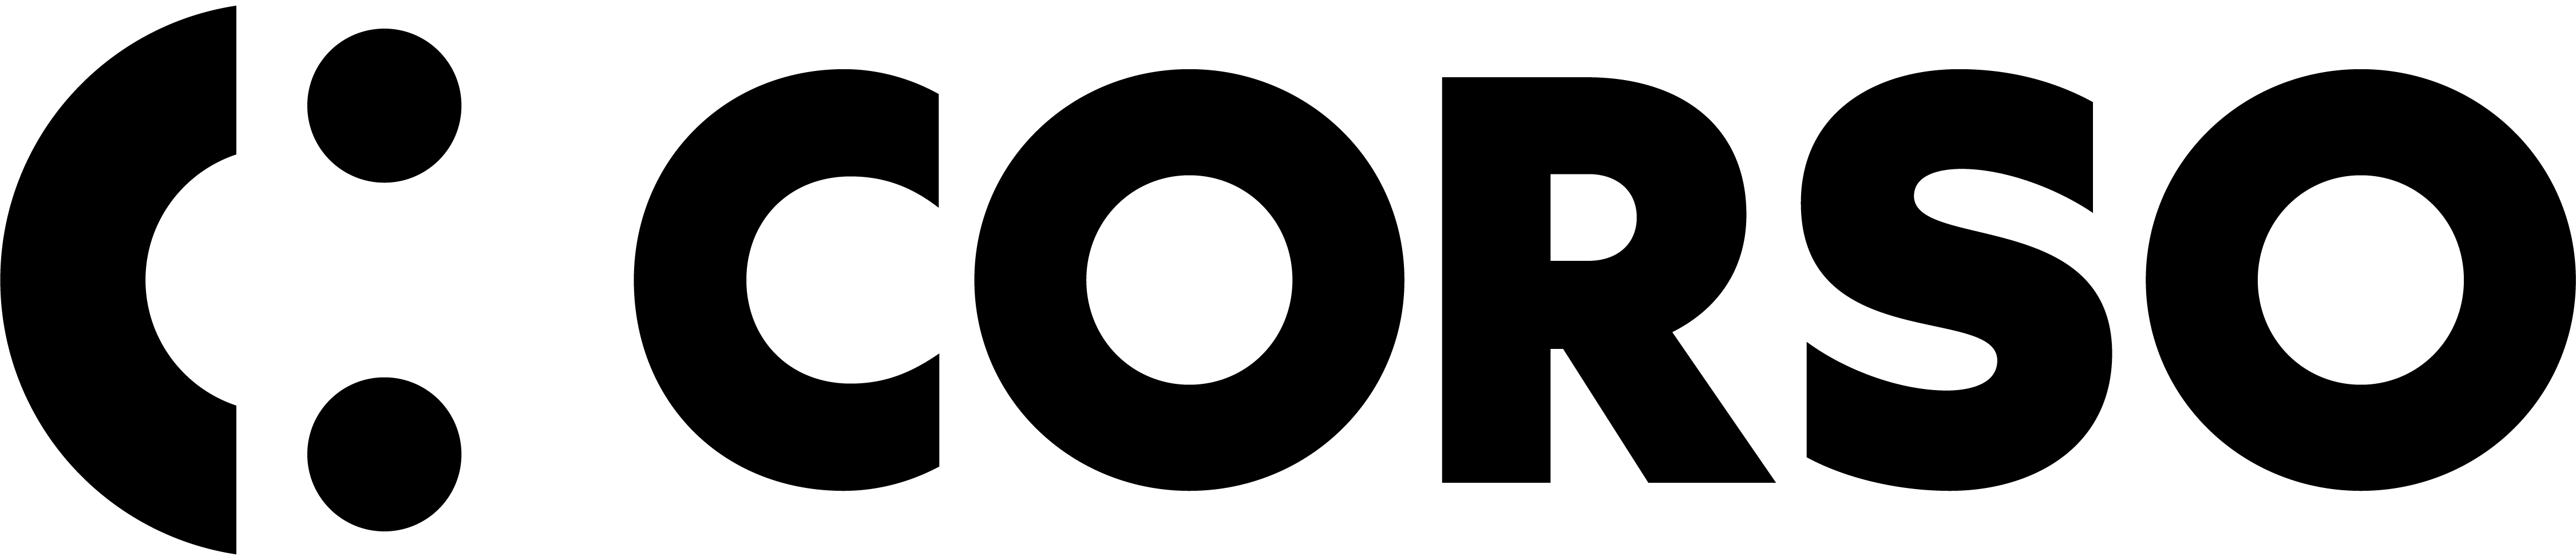 Corso Logo